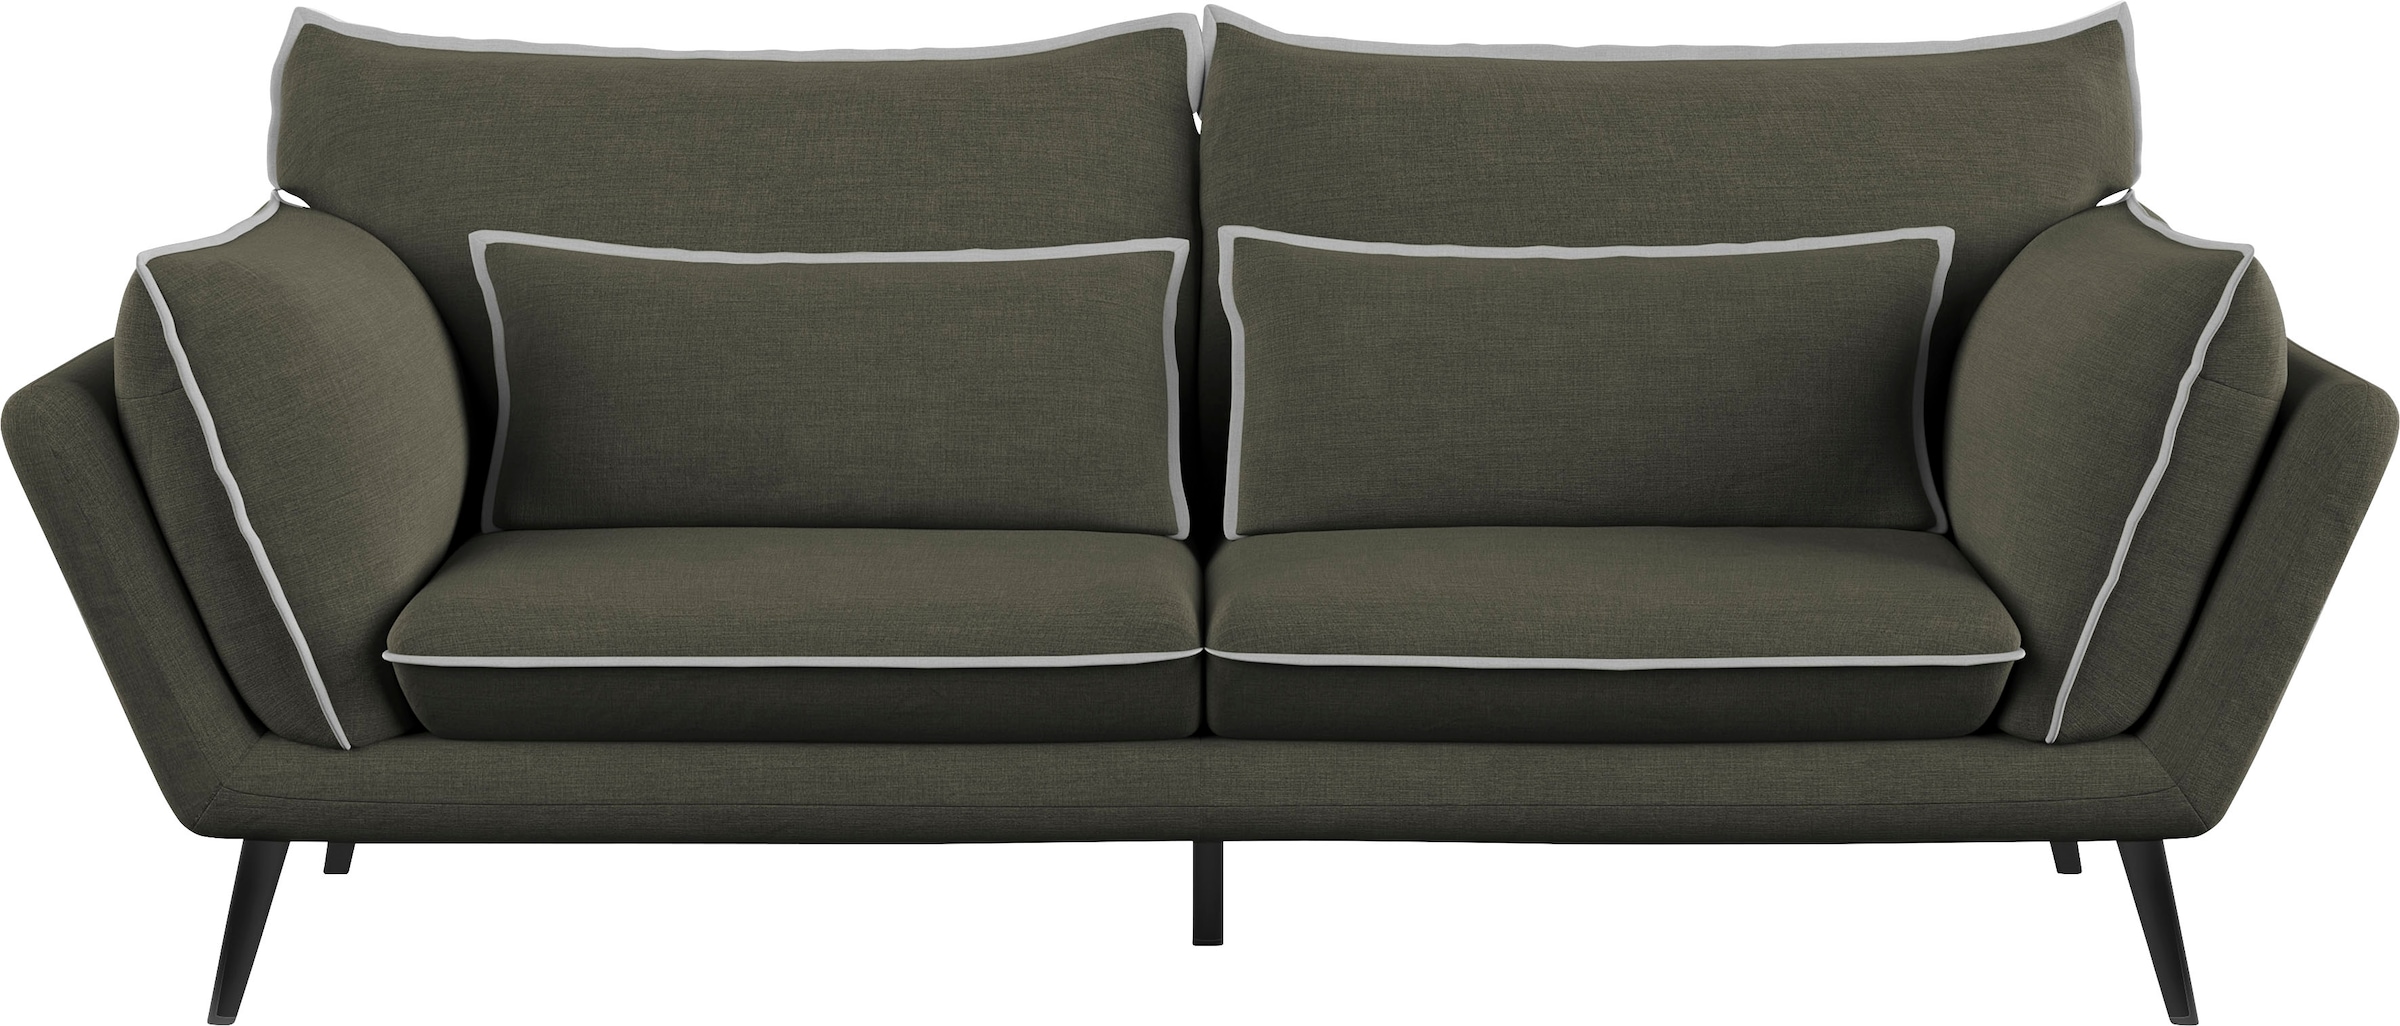 Sofa »Mara«, GERMAN kaufen mit dem SPECIAL 3-Sitzer, ausgezeichnet AWARD DESIGN 2021 Leonique online